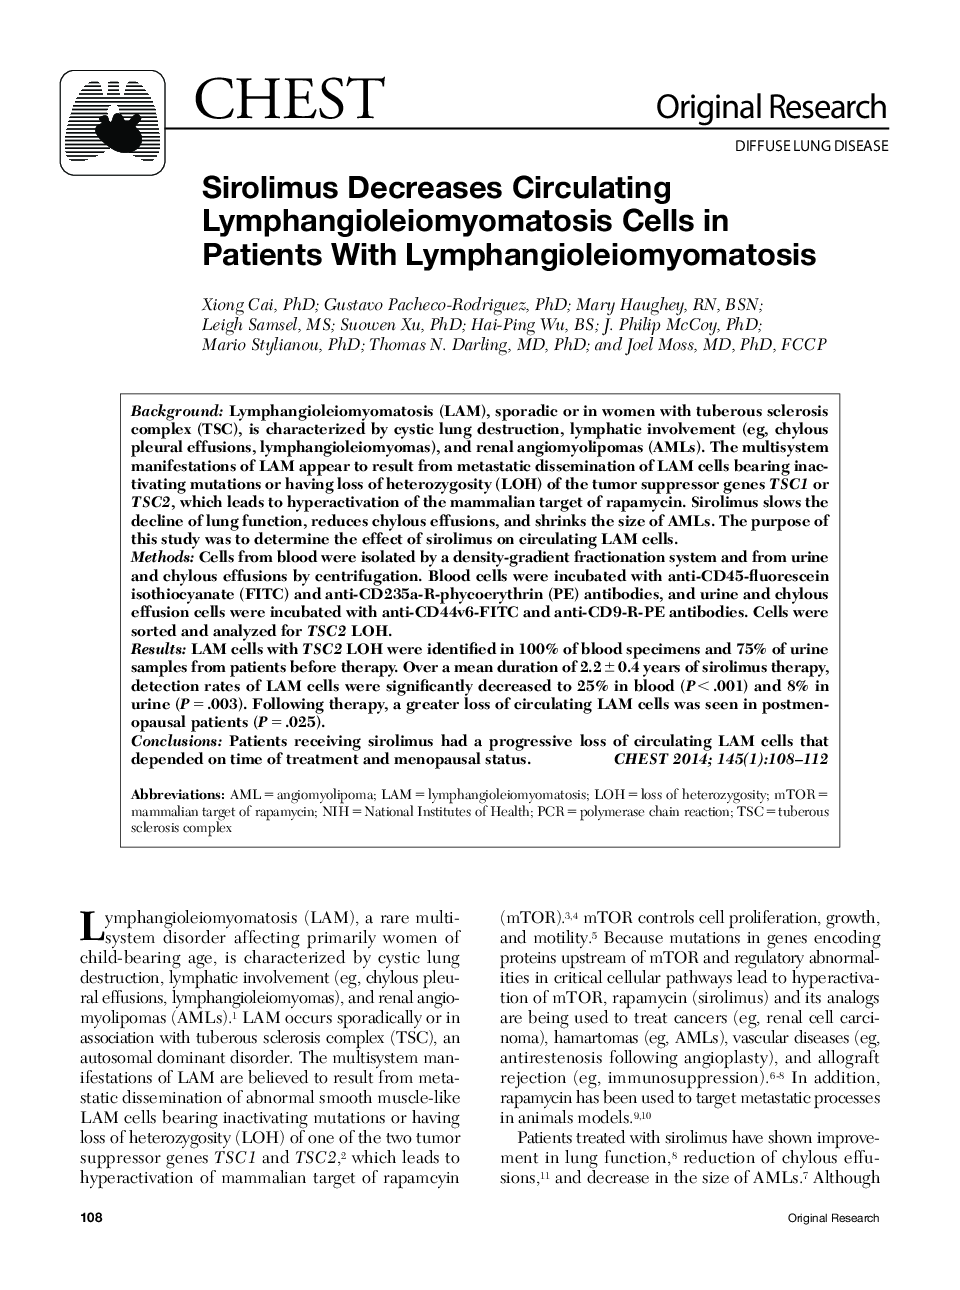 سیرلیموس سلولهای لنفانگولیلیوموئوماتوز را در بیماران مبتلا به لنفانگیزیلیومیومیتوزیس کاهش می دهد 